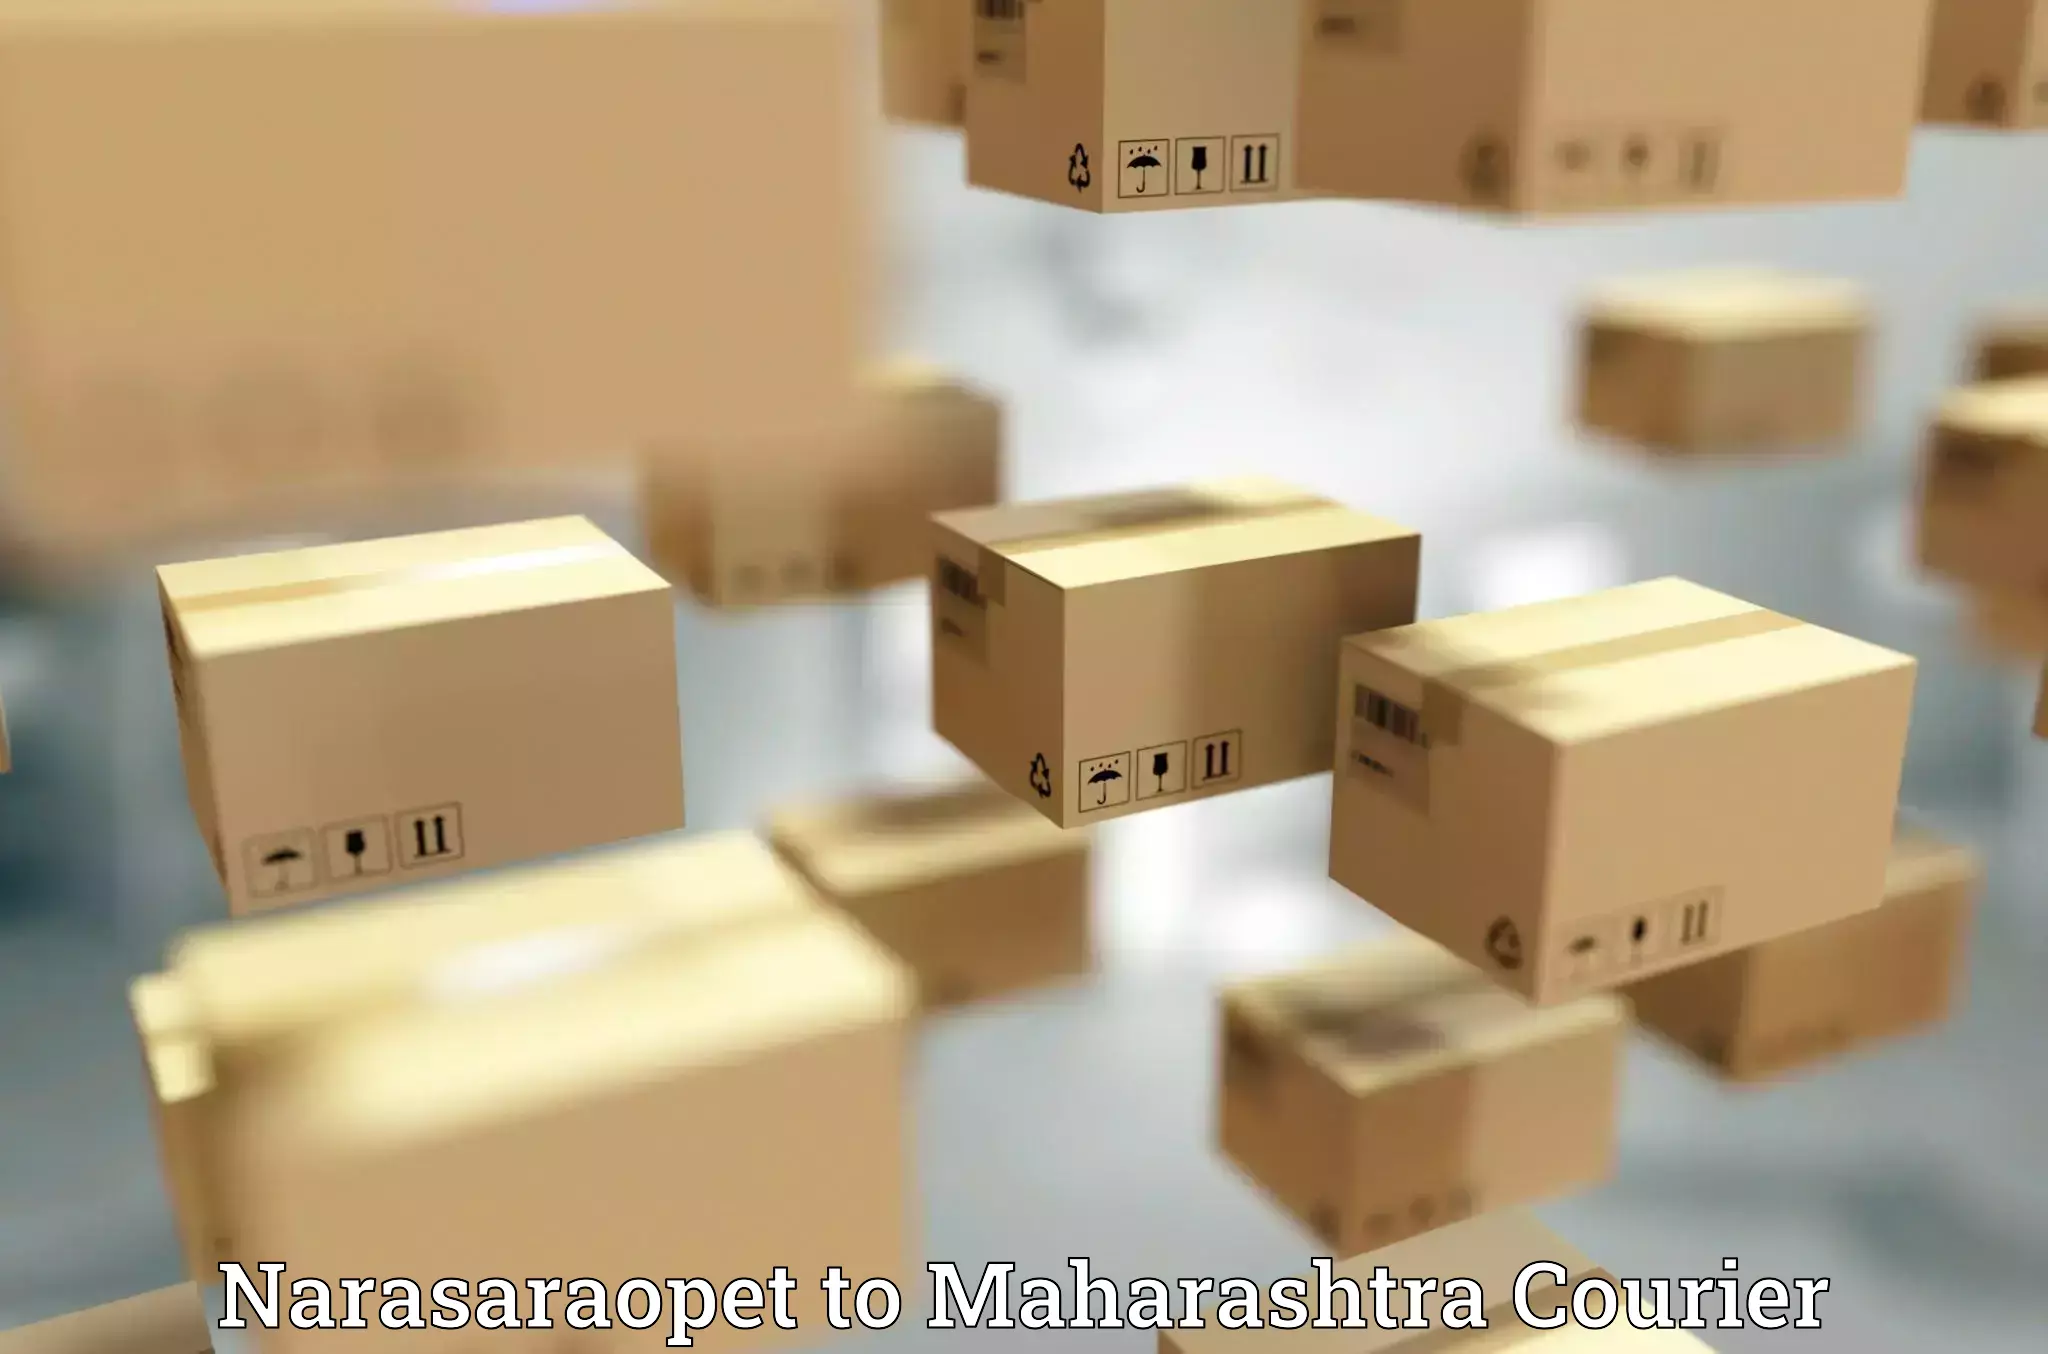 Full-service courier options Narasaraopet to Maharashtra